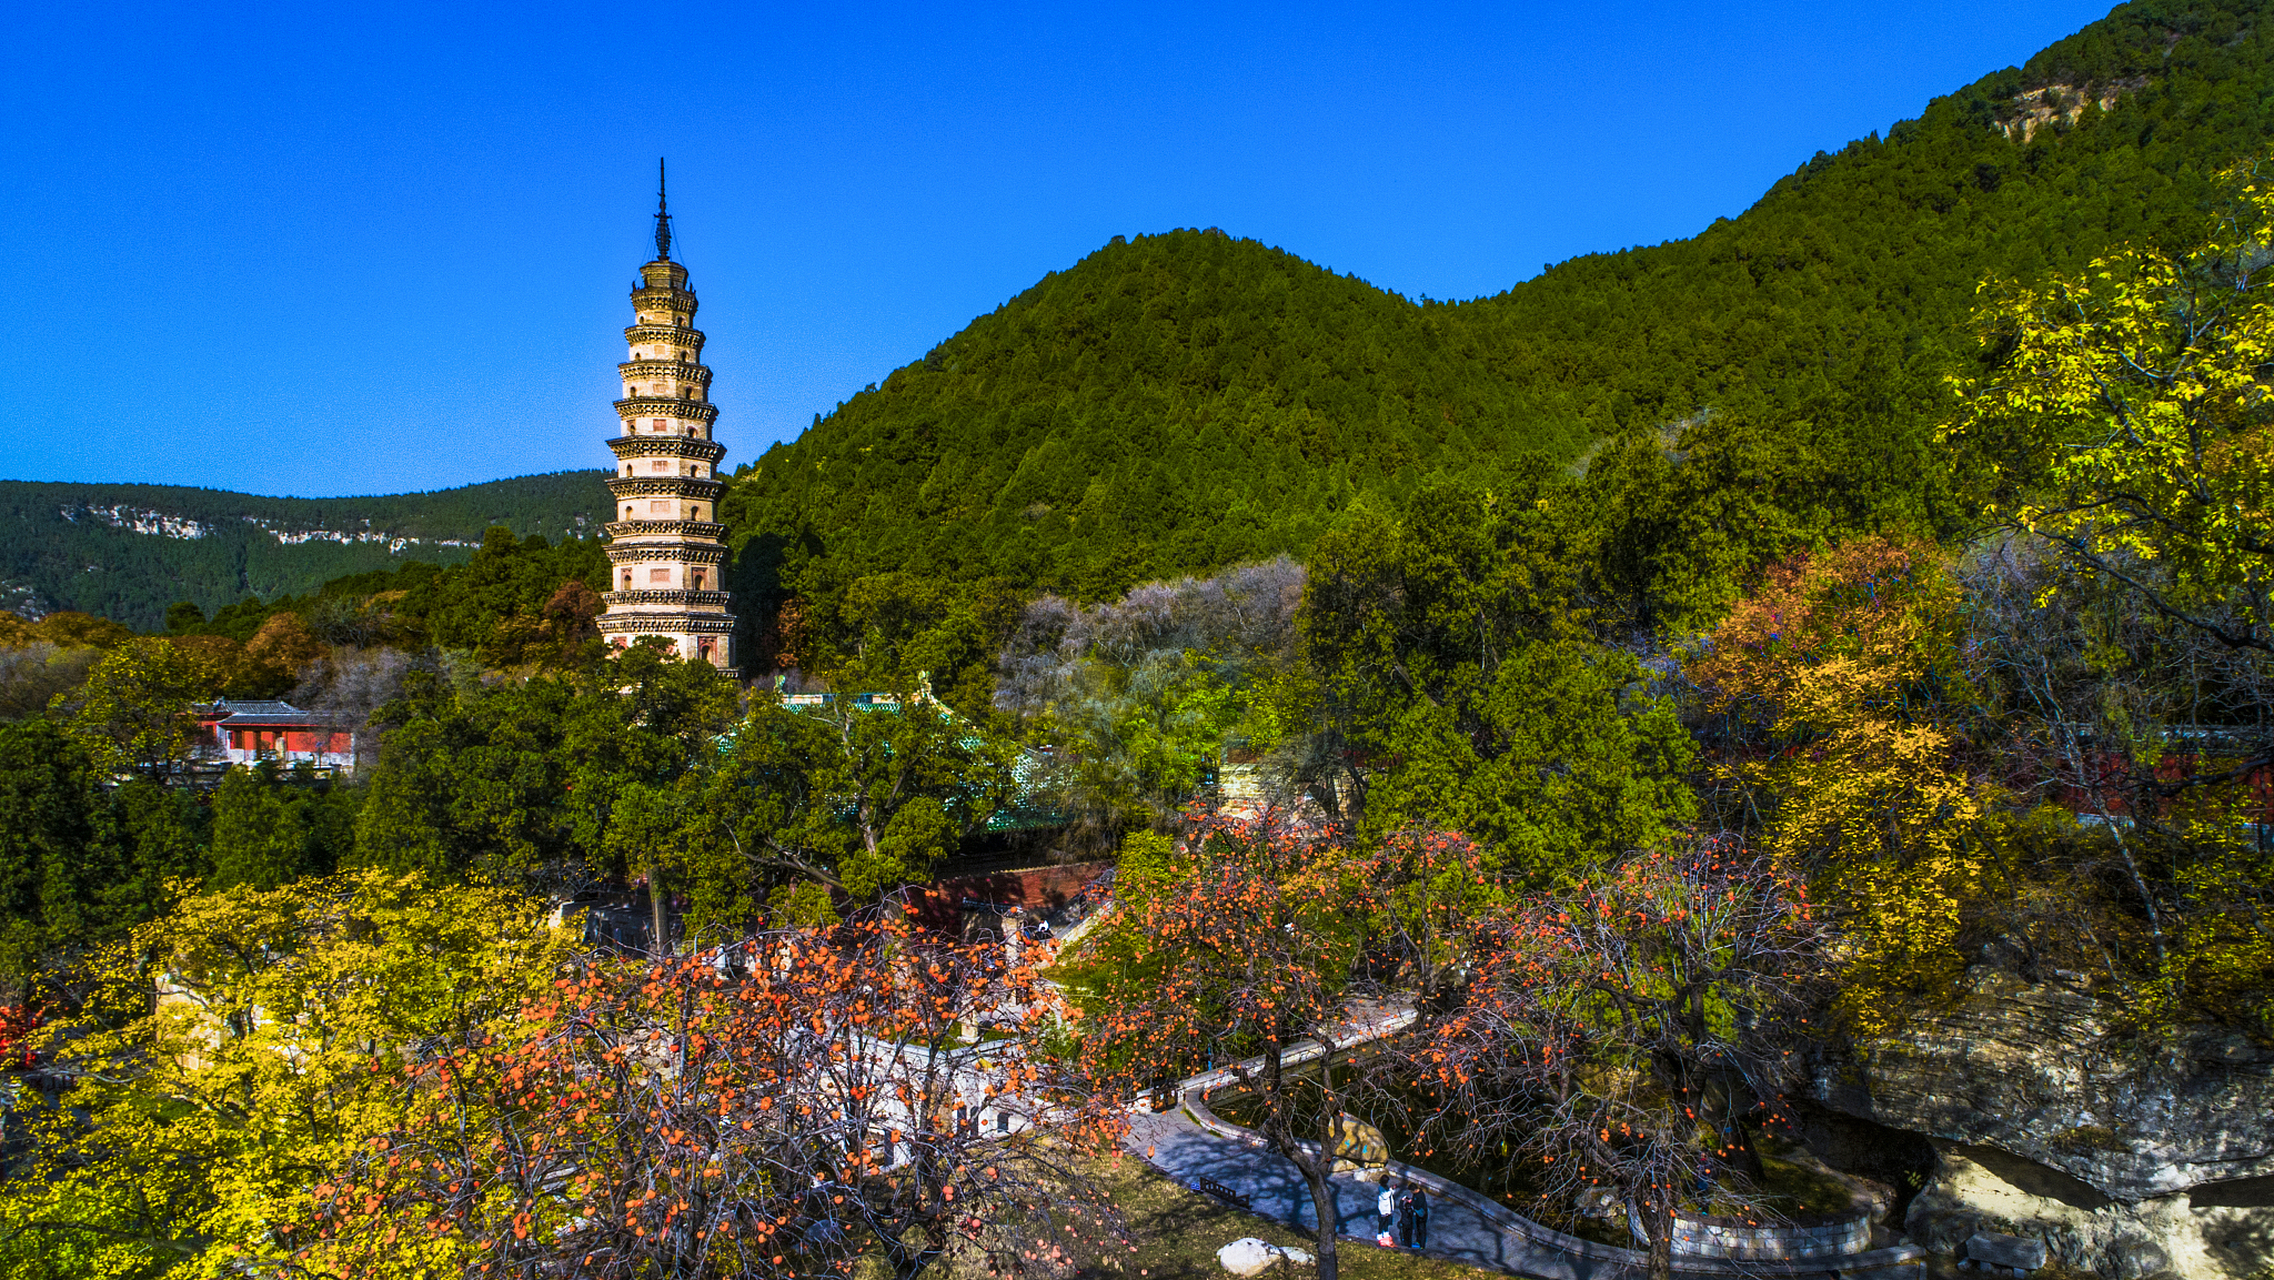 灵岩寺——泰山西北麓的佛教圣地  灵岩寺,位于山东省济南市长清区